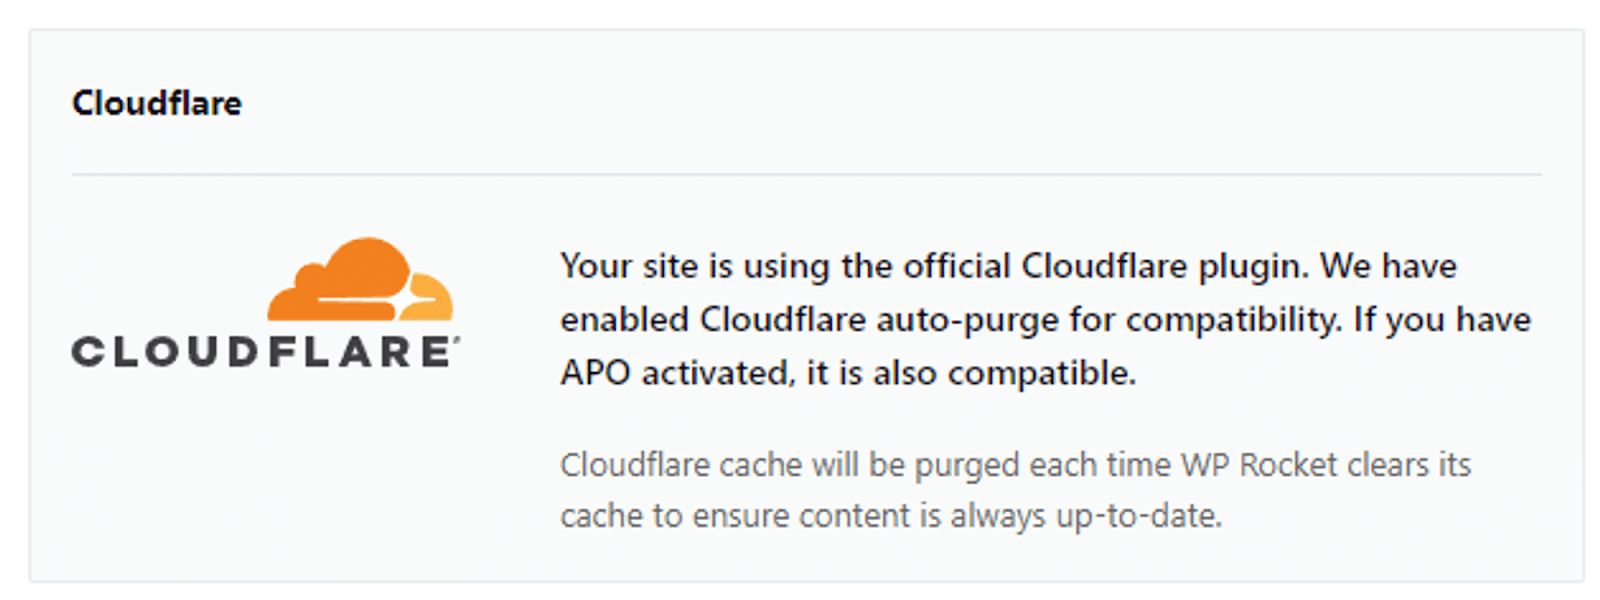 Le message de confirmation que le plugin Cloudflare fonctionne avec une compatibilité totale.
